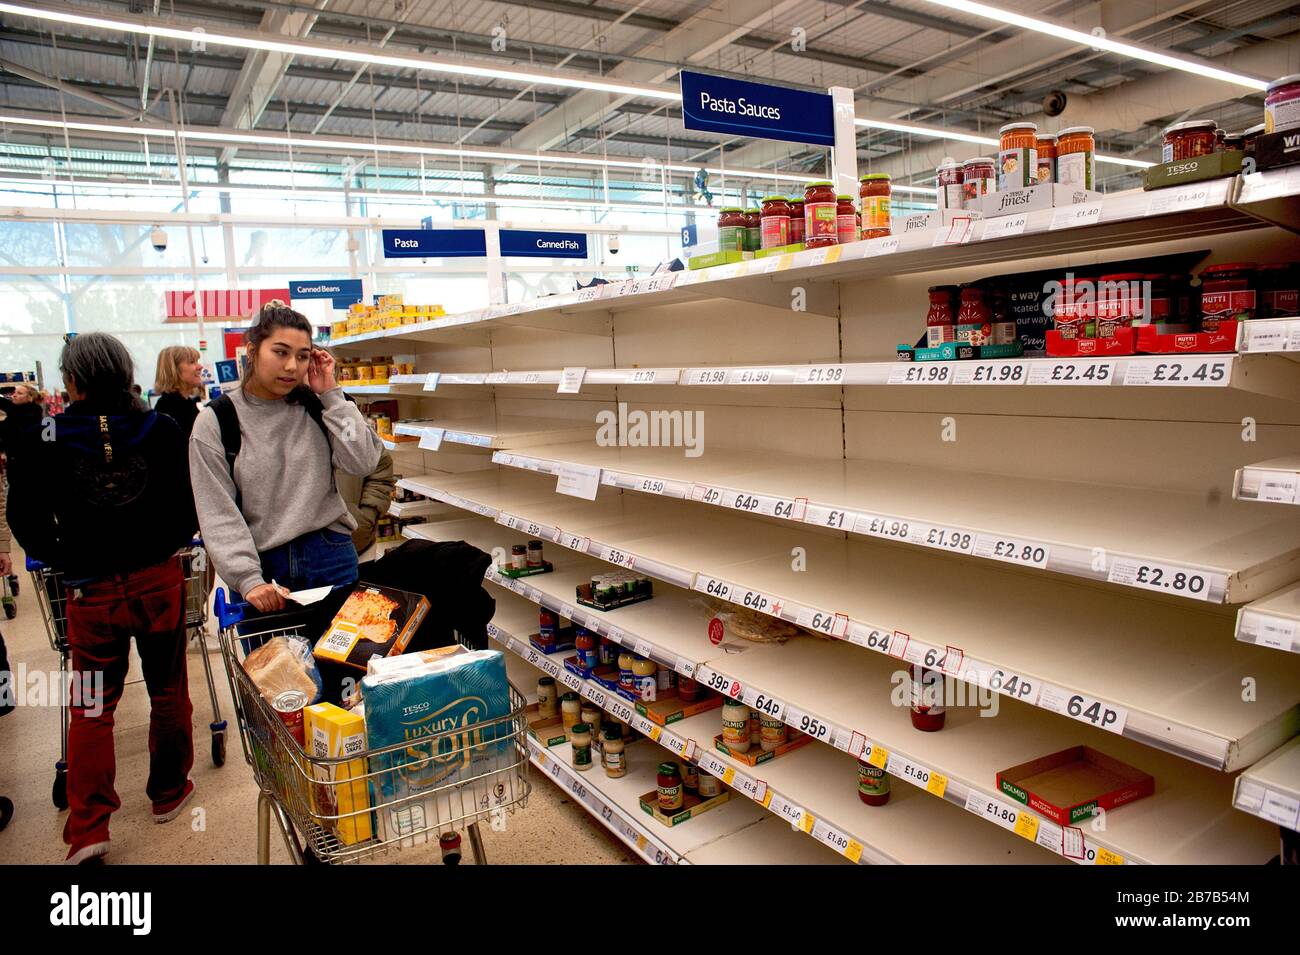 Tesco Supermarket, Hove, Regno Unito, marzo 2020. L'acquisto di panico dovuto i timori di coronavirus ha svuotato gli scaffali dei generi alimentari come la pasta. Foto Stock